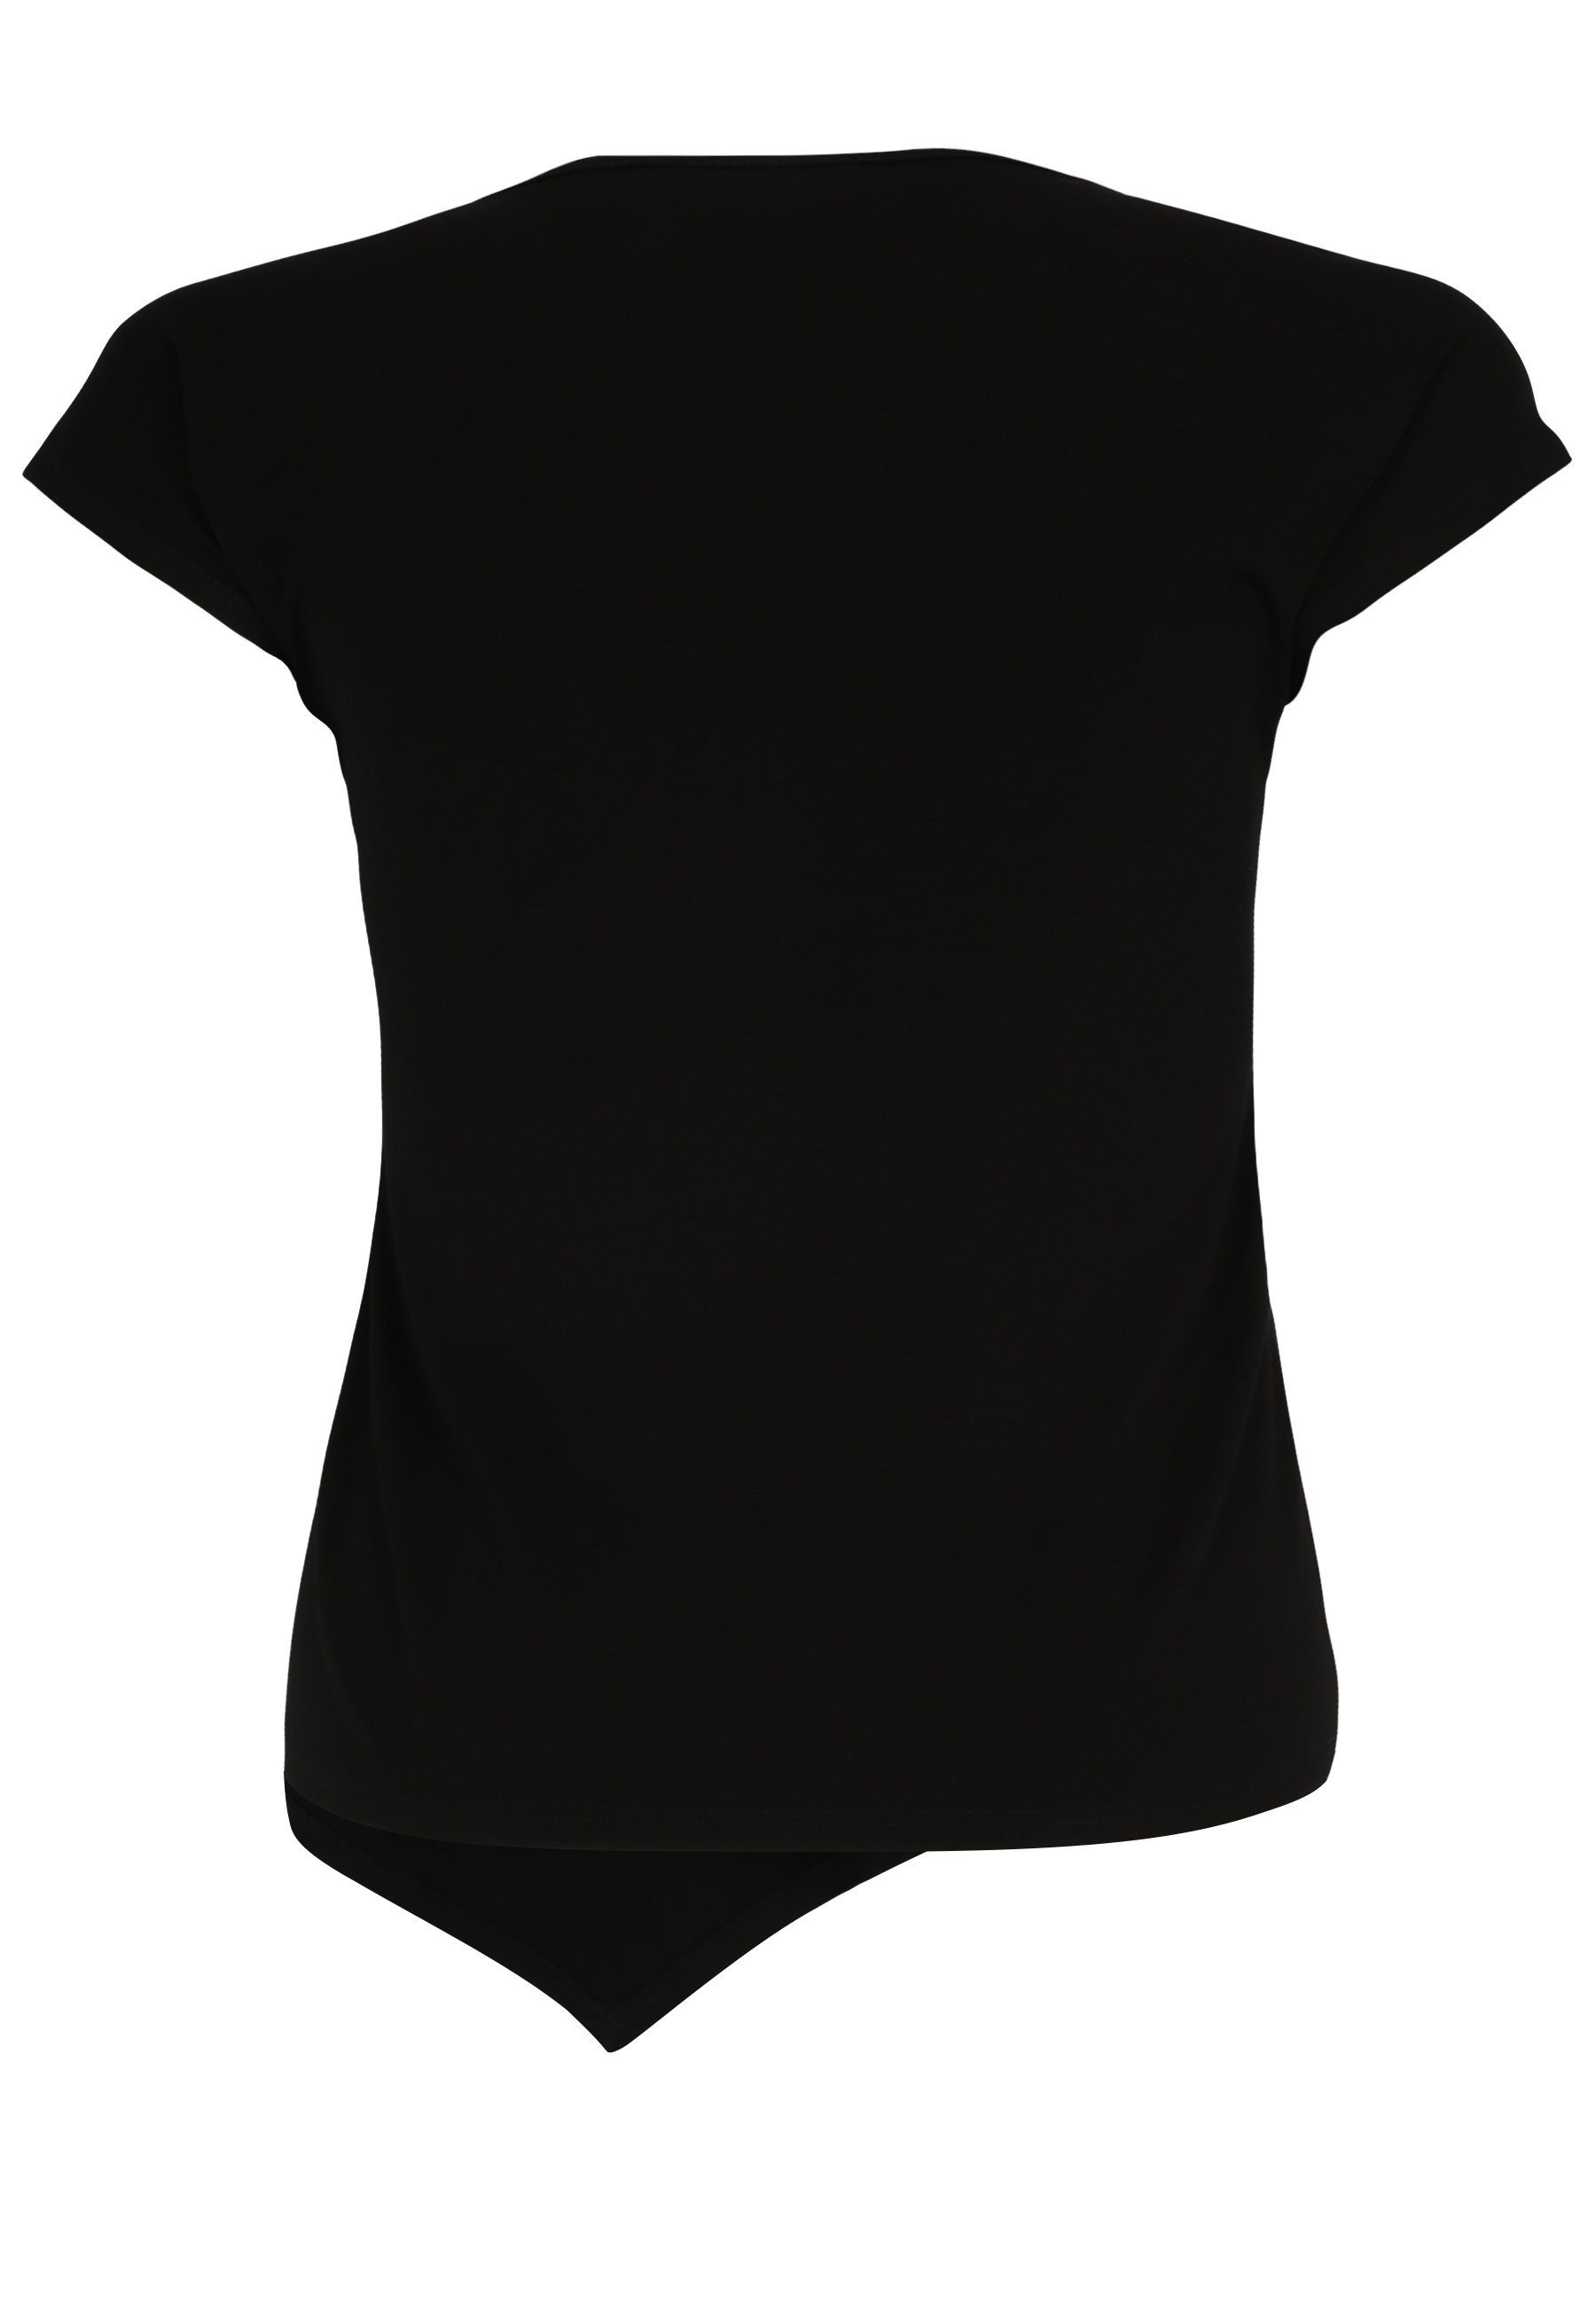 Doris Streich T-Shirt mit Design Wording-Motiv mit T-Shirt modernem